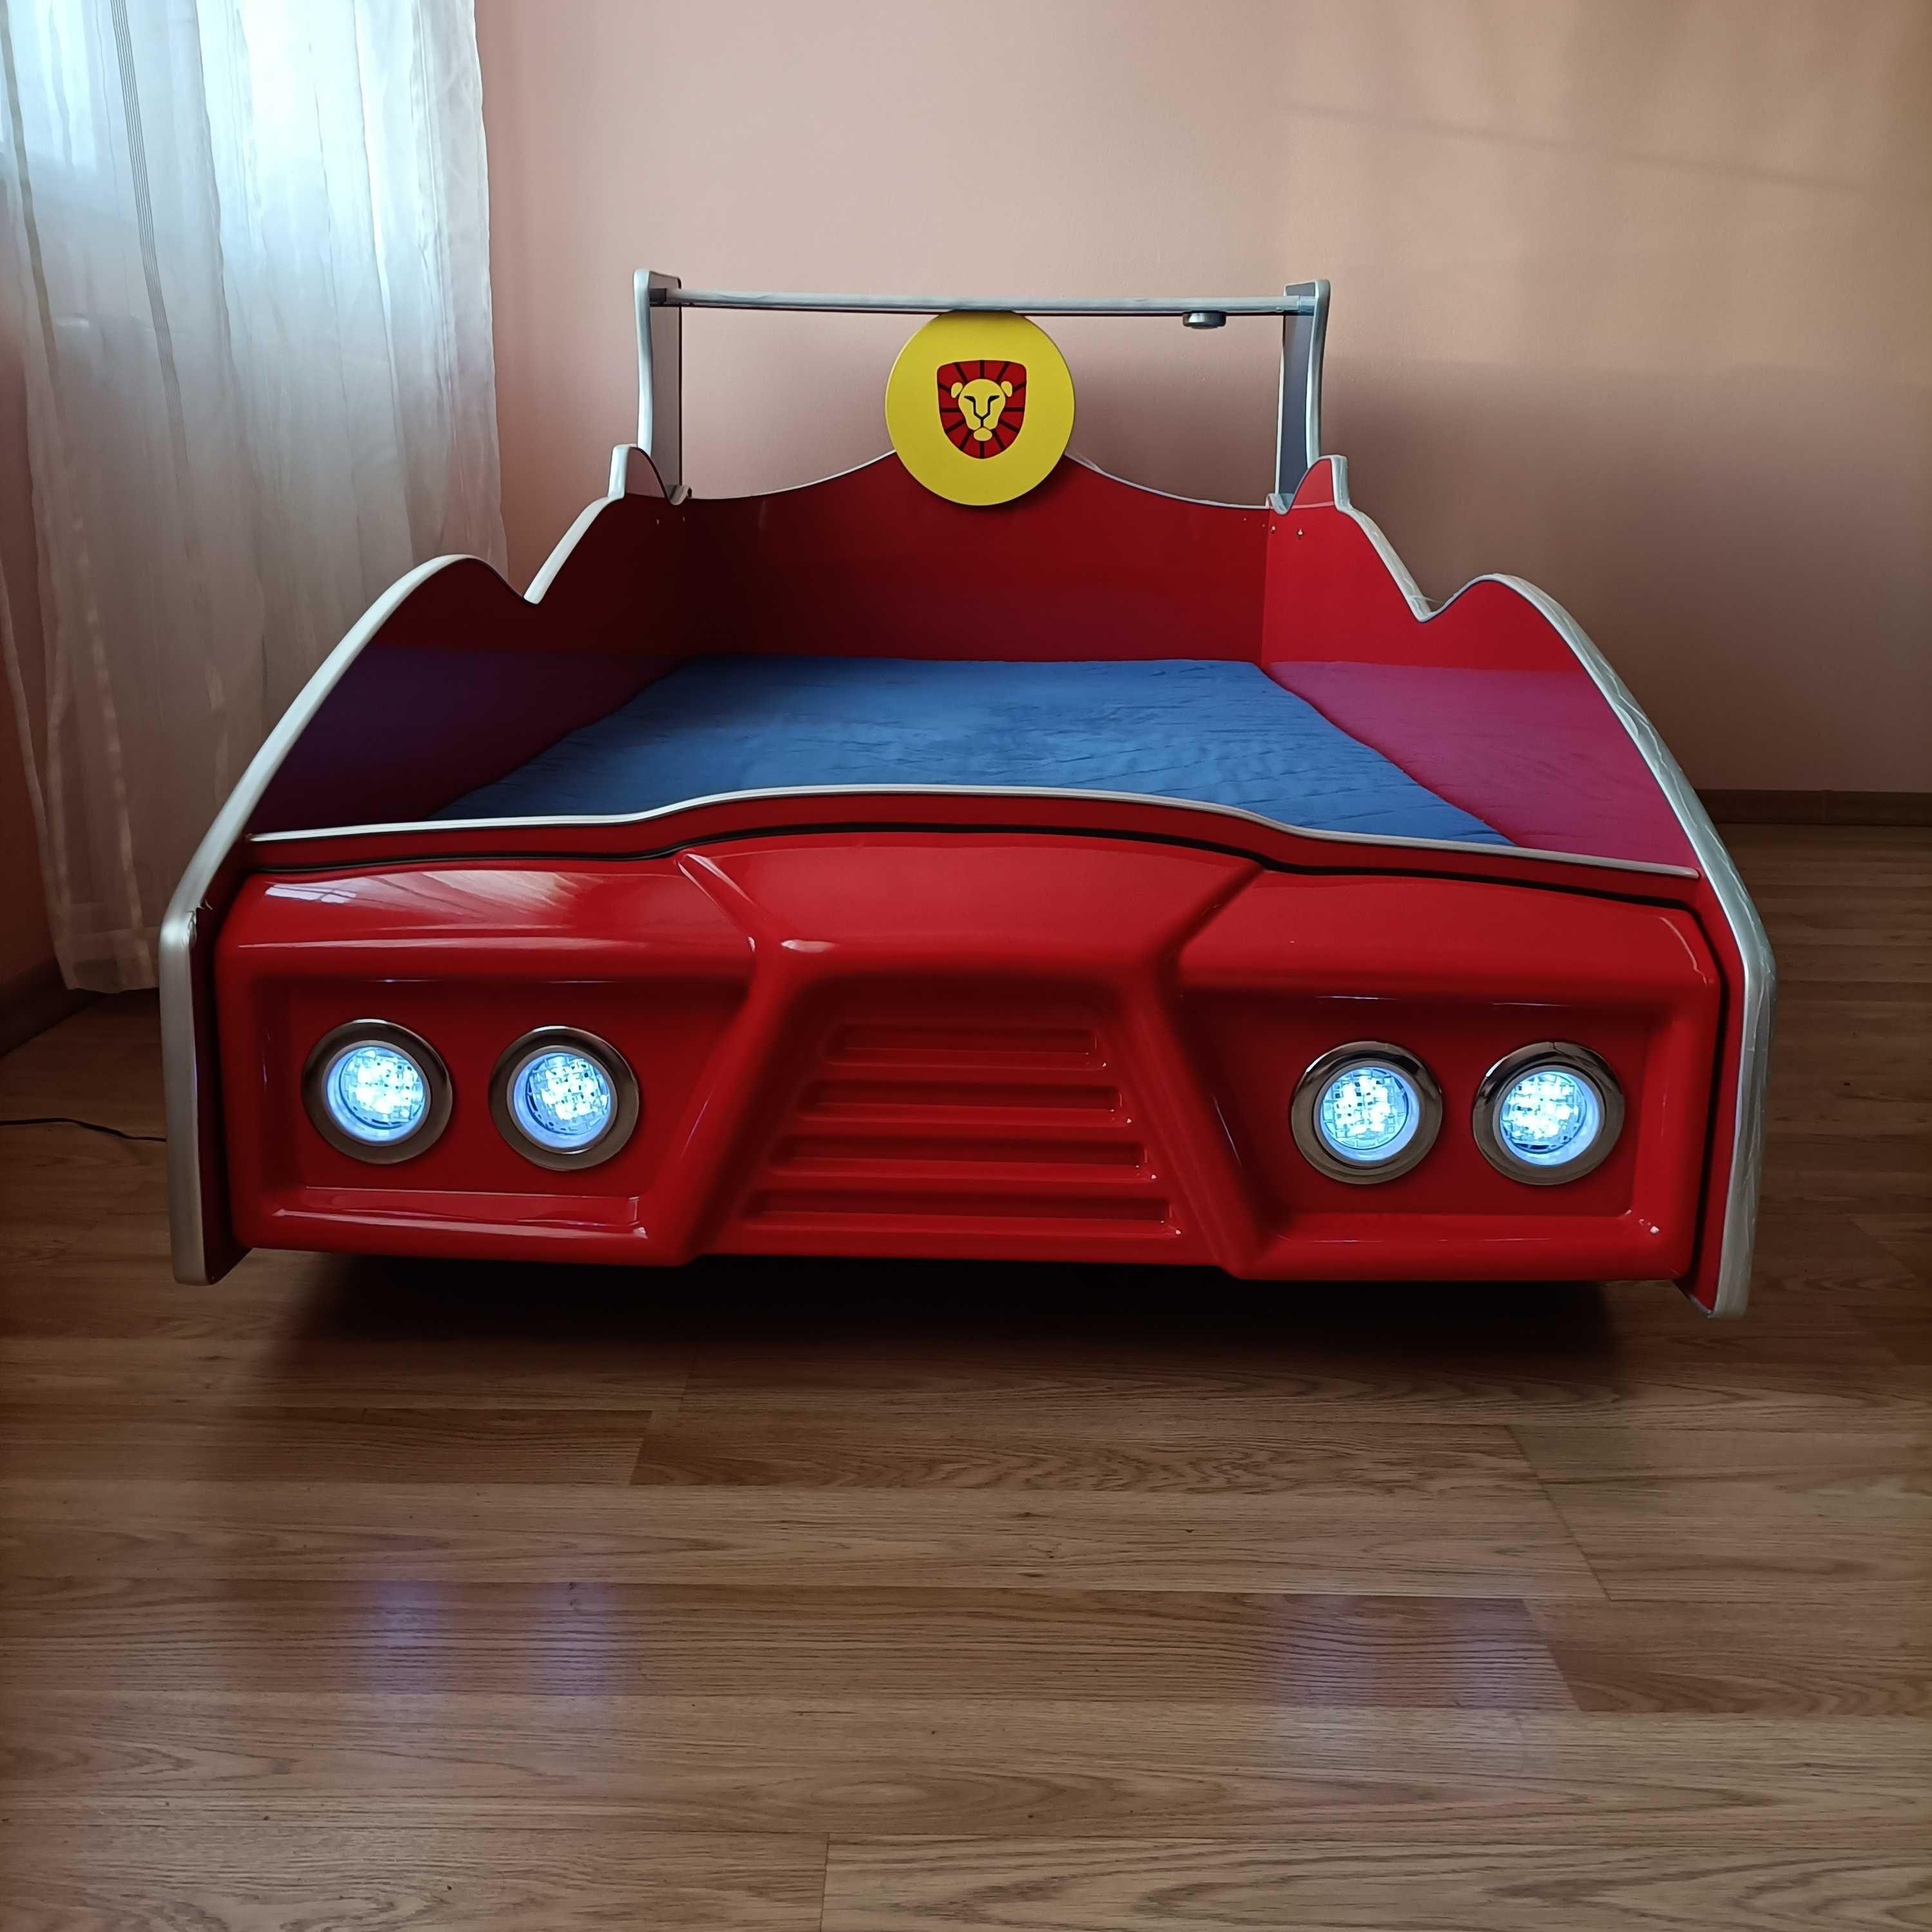 Łóżko samochód ze światłami ledowymi, plus materac.